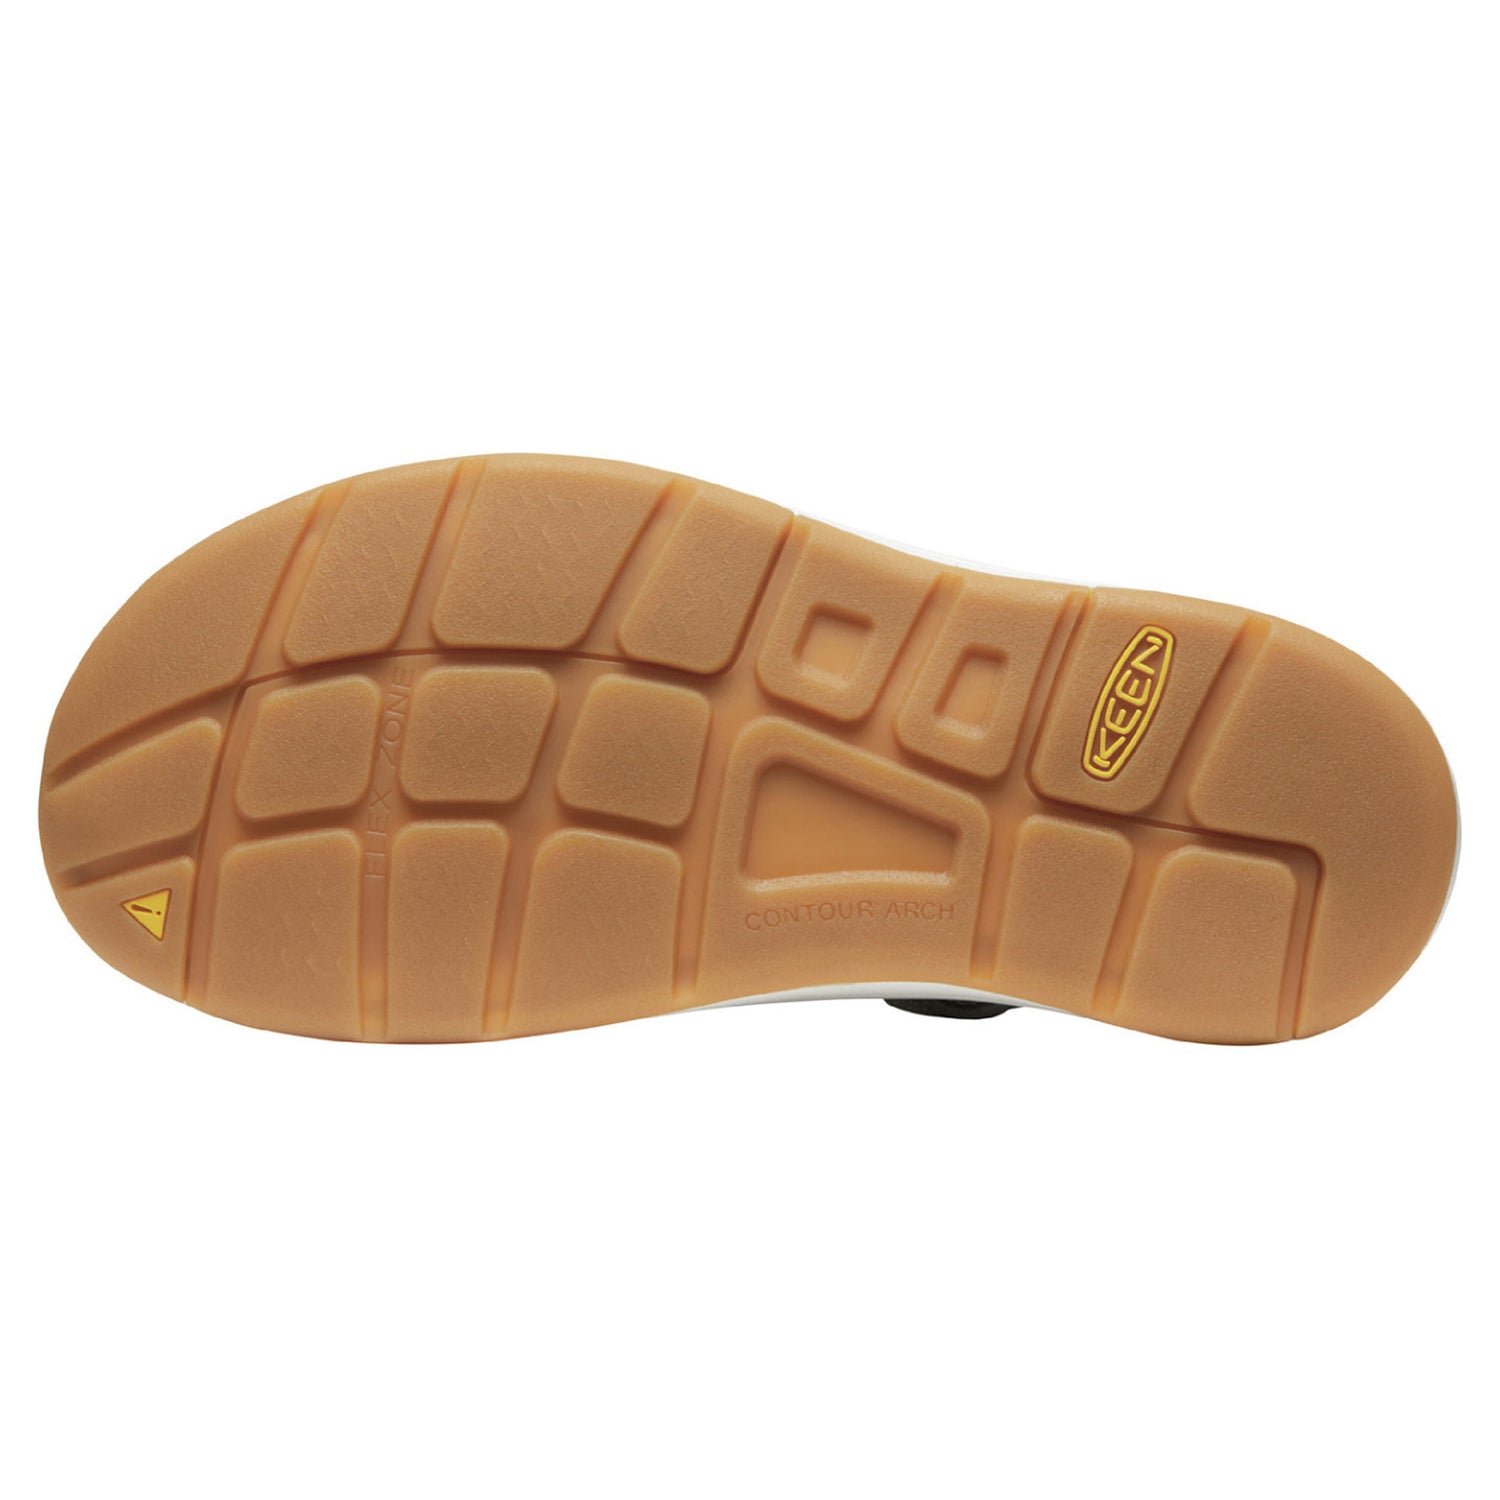 Peltz Shoes  Women's Keen Uneek Sandal Drizzle/Fawn 1027448